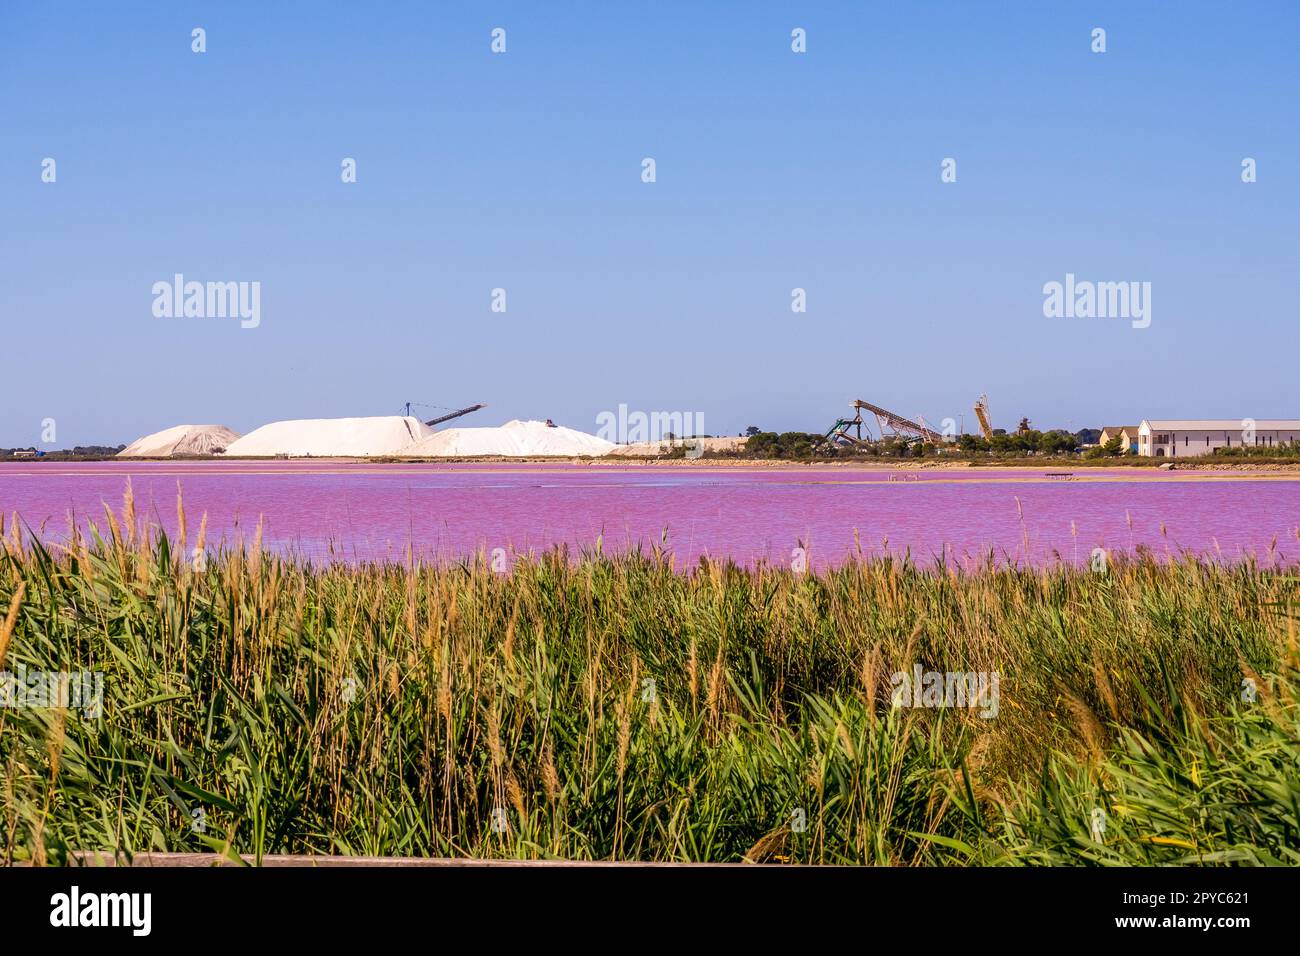 Die Salzproduktion, die rosafarbene Lagune und die Hügel im Mittelmeer befinden sich in Aigues-Mortes. Camargue, Frankreich. Fotos in hoher Qualität. Hochwertiges Fotopapier Stockfoto